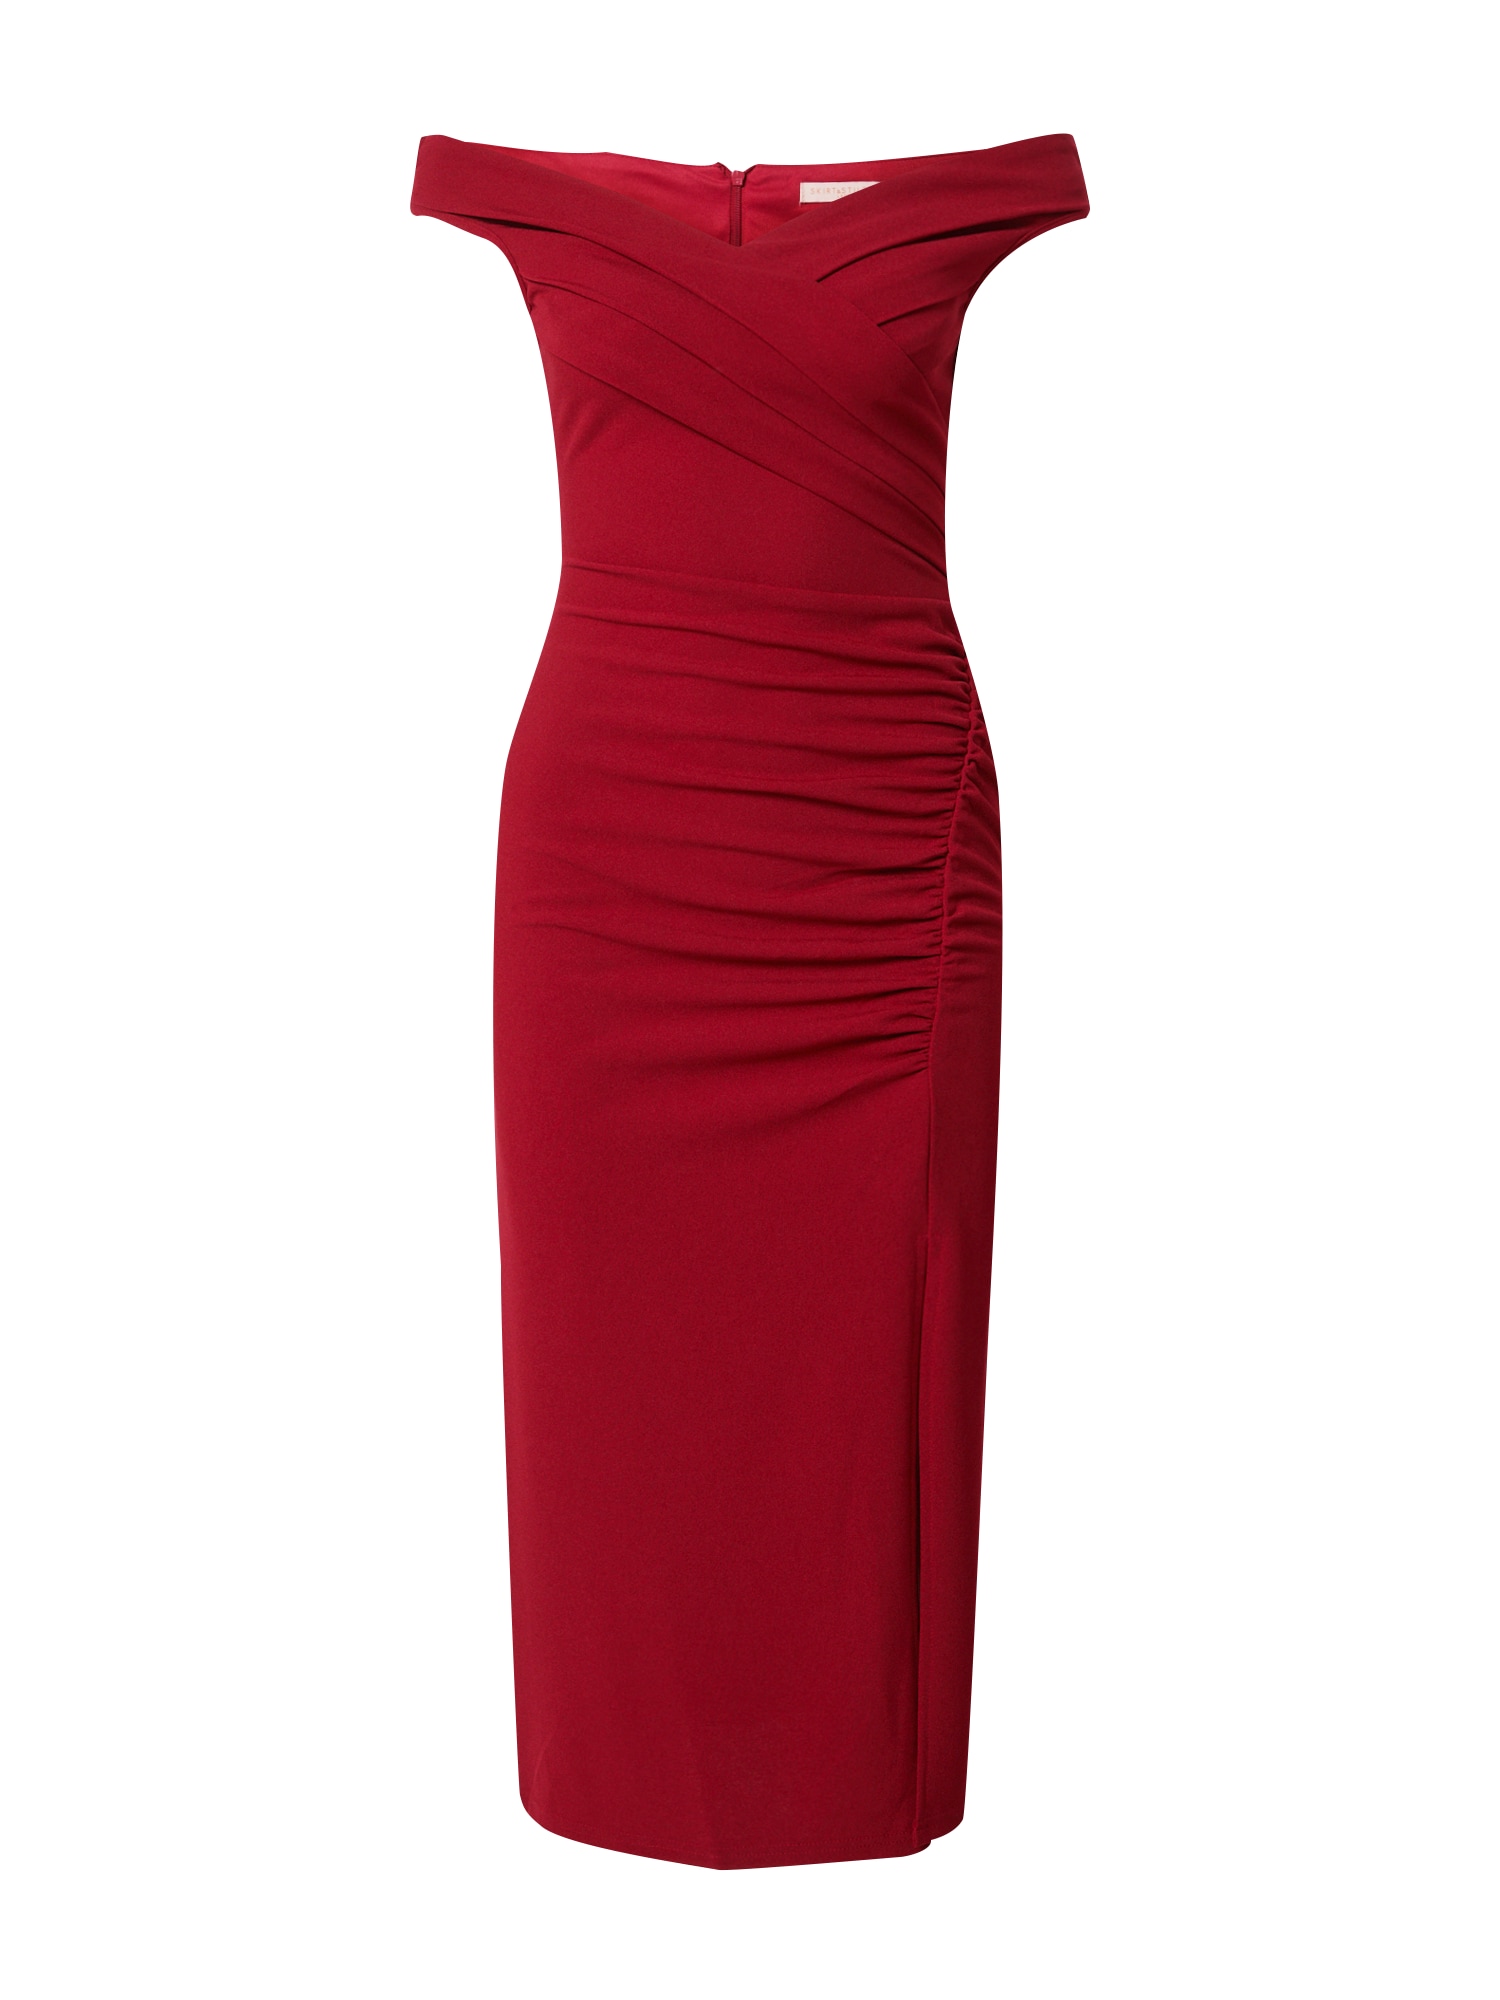 Skirt & Stiletto Vakarinė suknelė vyno raudona spalva